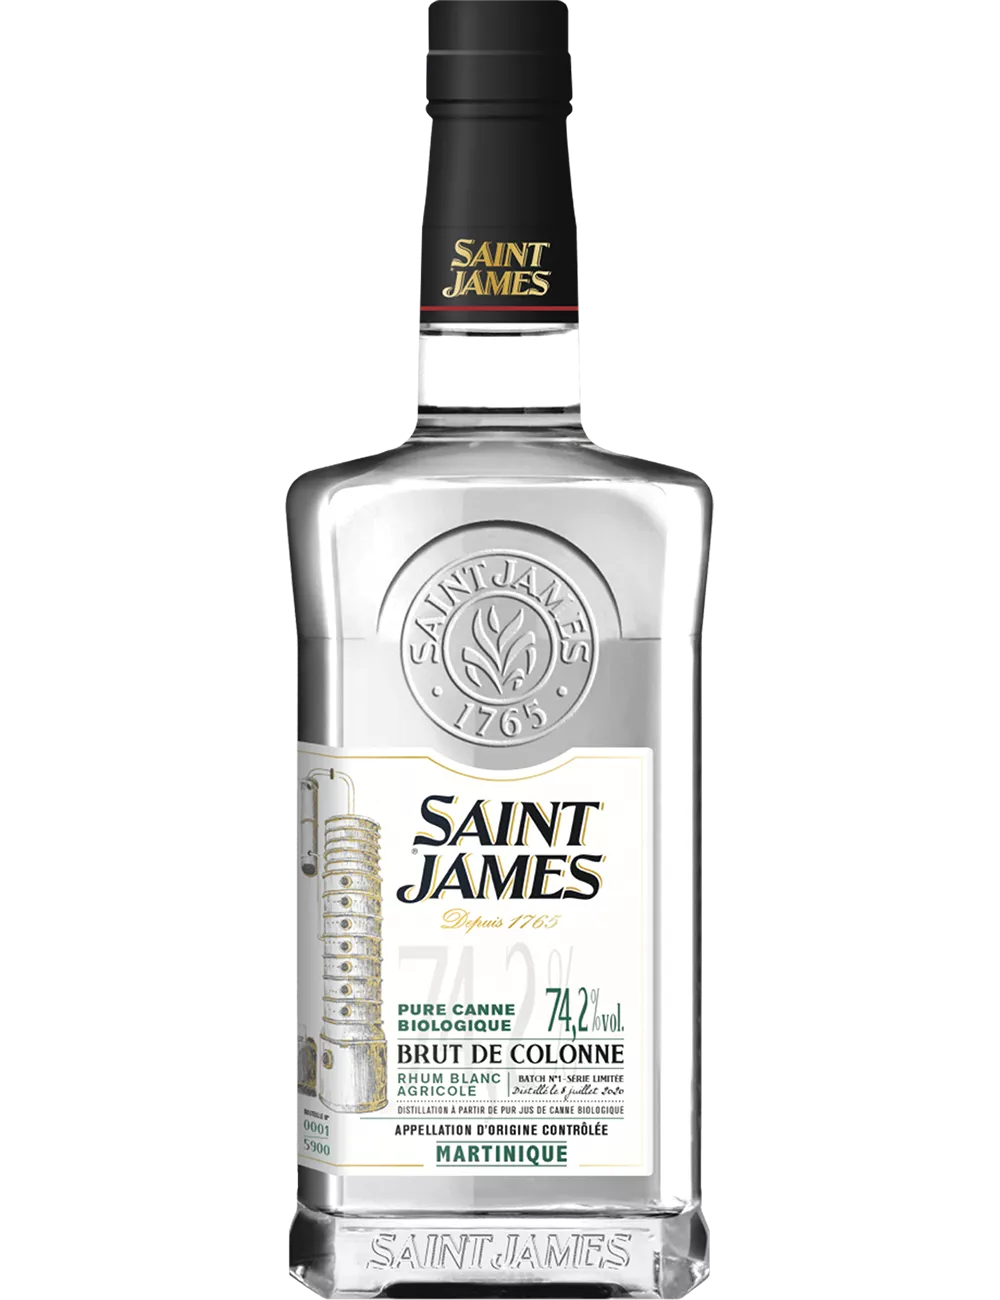 Saint James - Brut de Colonne - Rhum blanc agricole